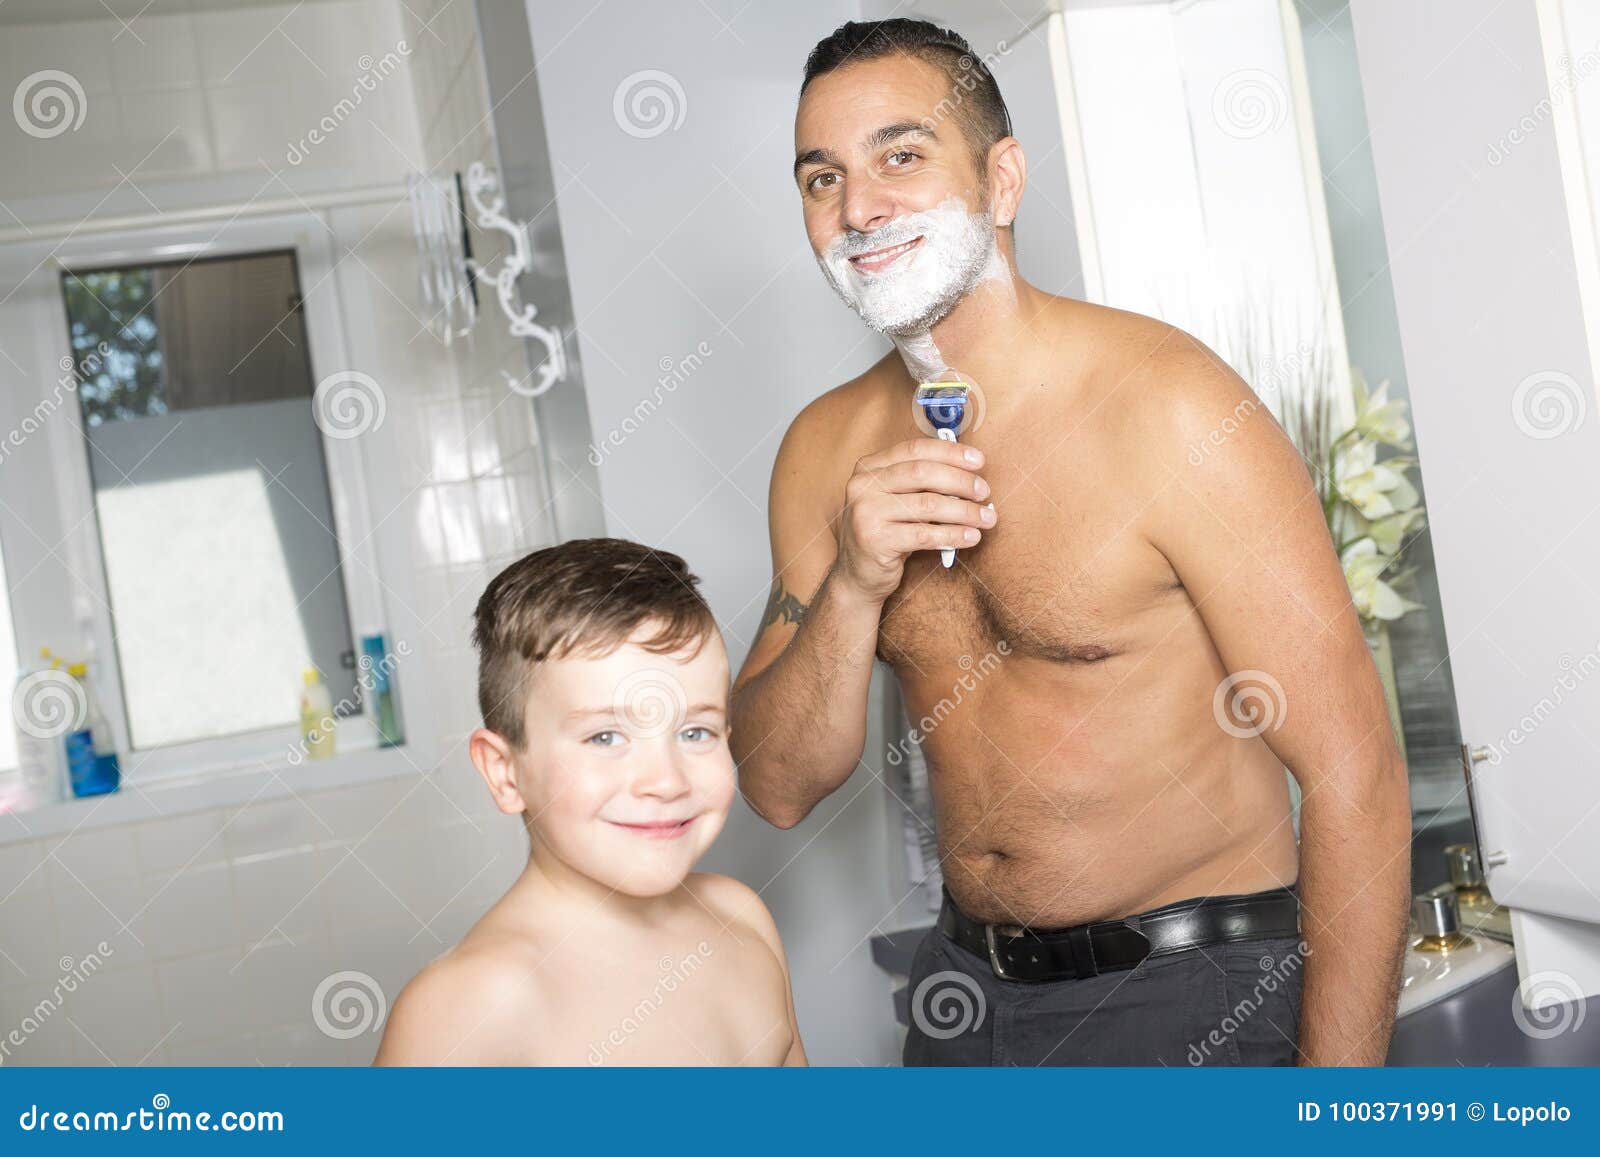 Мама бреет видео. Фотосессия пап в ванне. Малыш с папой в ванне. Папа купается. Сын в ванне.